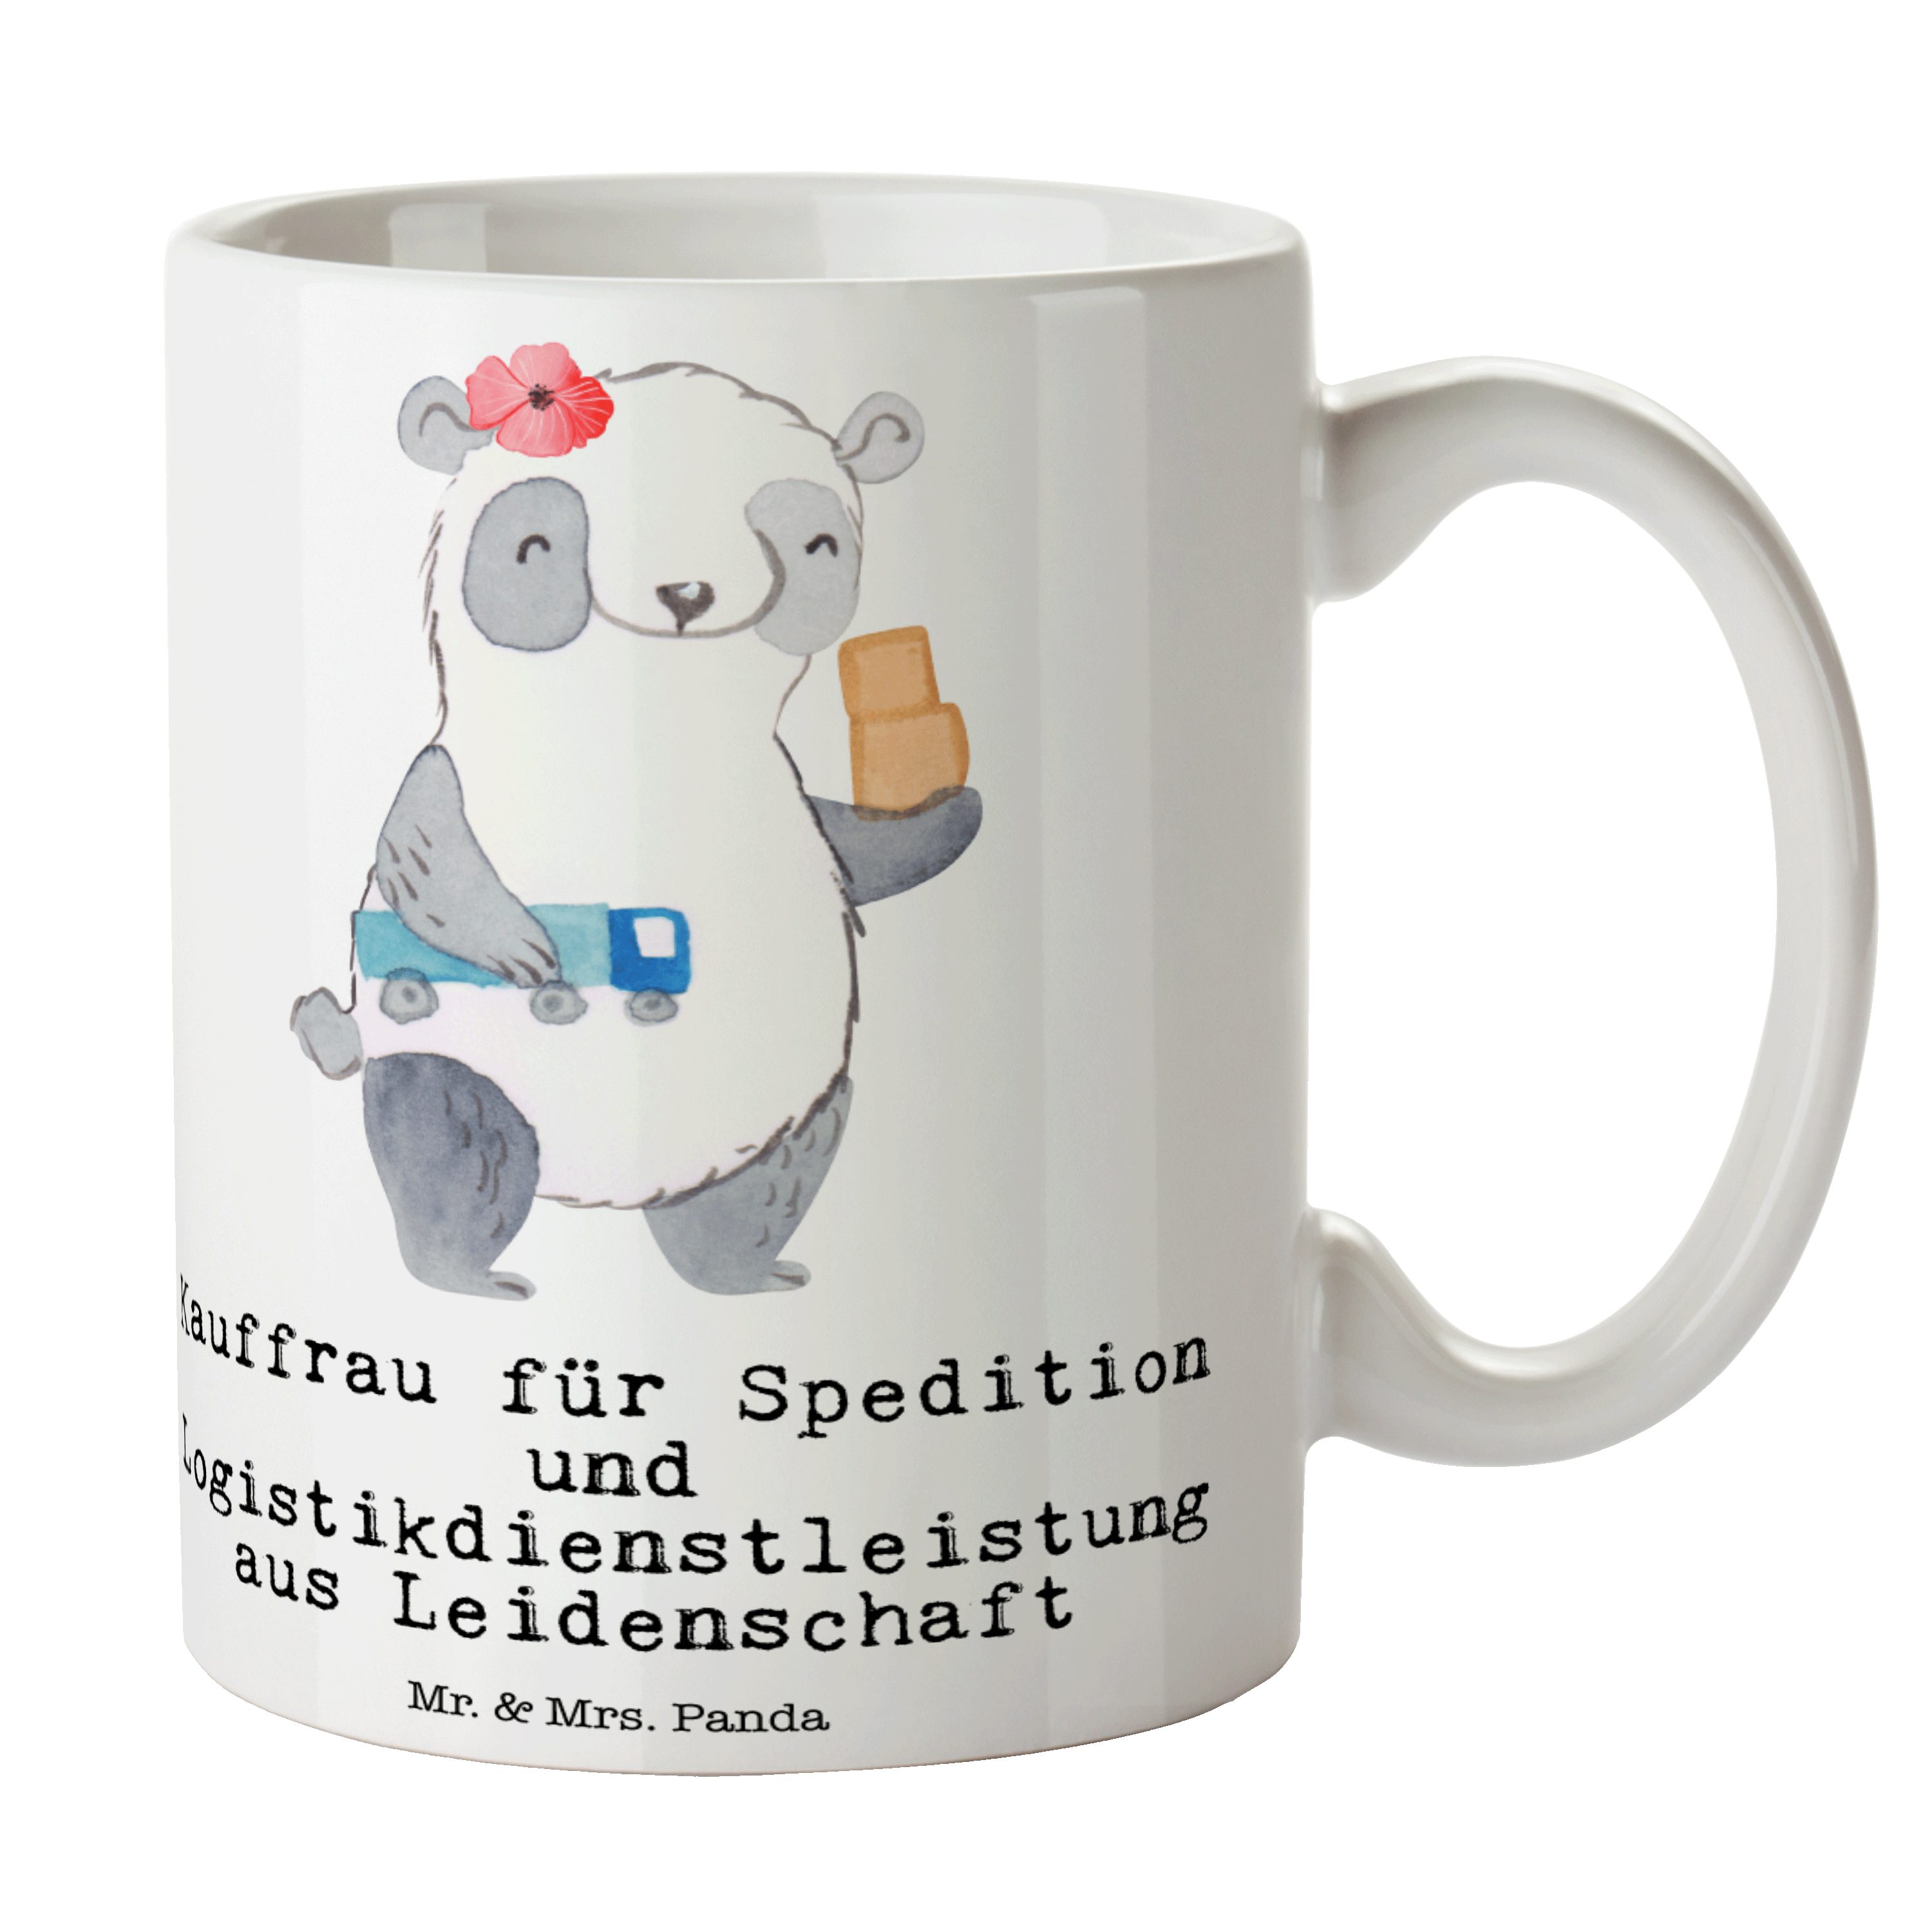 Mr. & Mrs. Panda Tasse Kauffrau für Spedition und Logistikdienstleistung aus Leidenschaft -, Keramik